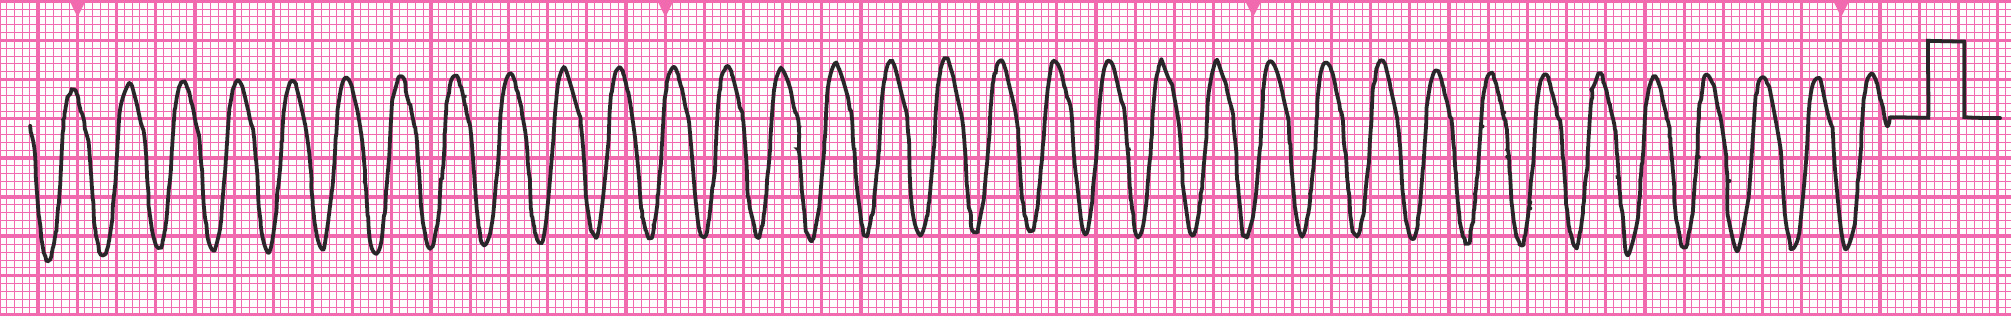 An ECG rhythm strip.